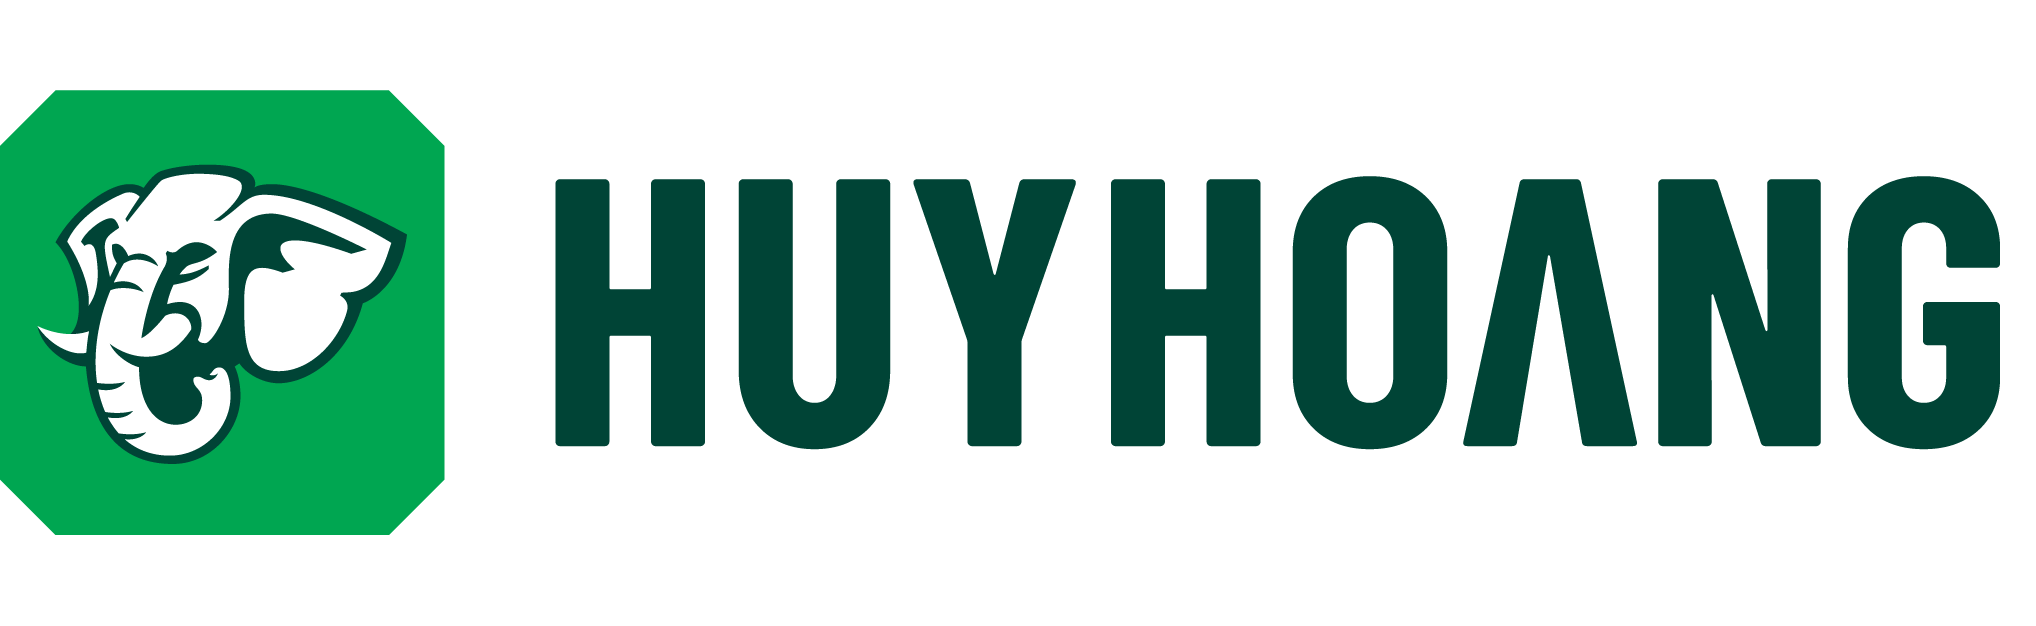 Logo Khóa Huy Hoàng - Nhà sản xuất khóa chuyên nghiệp từ năm 1979